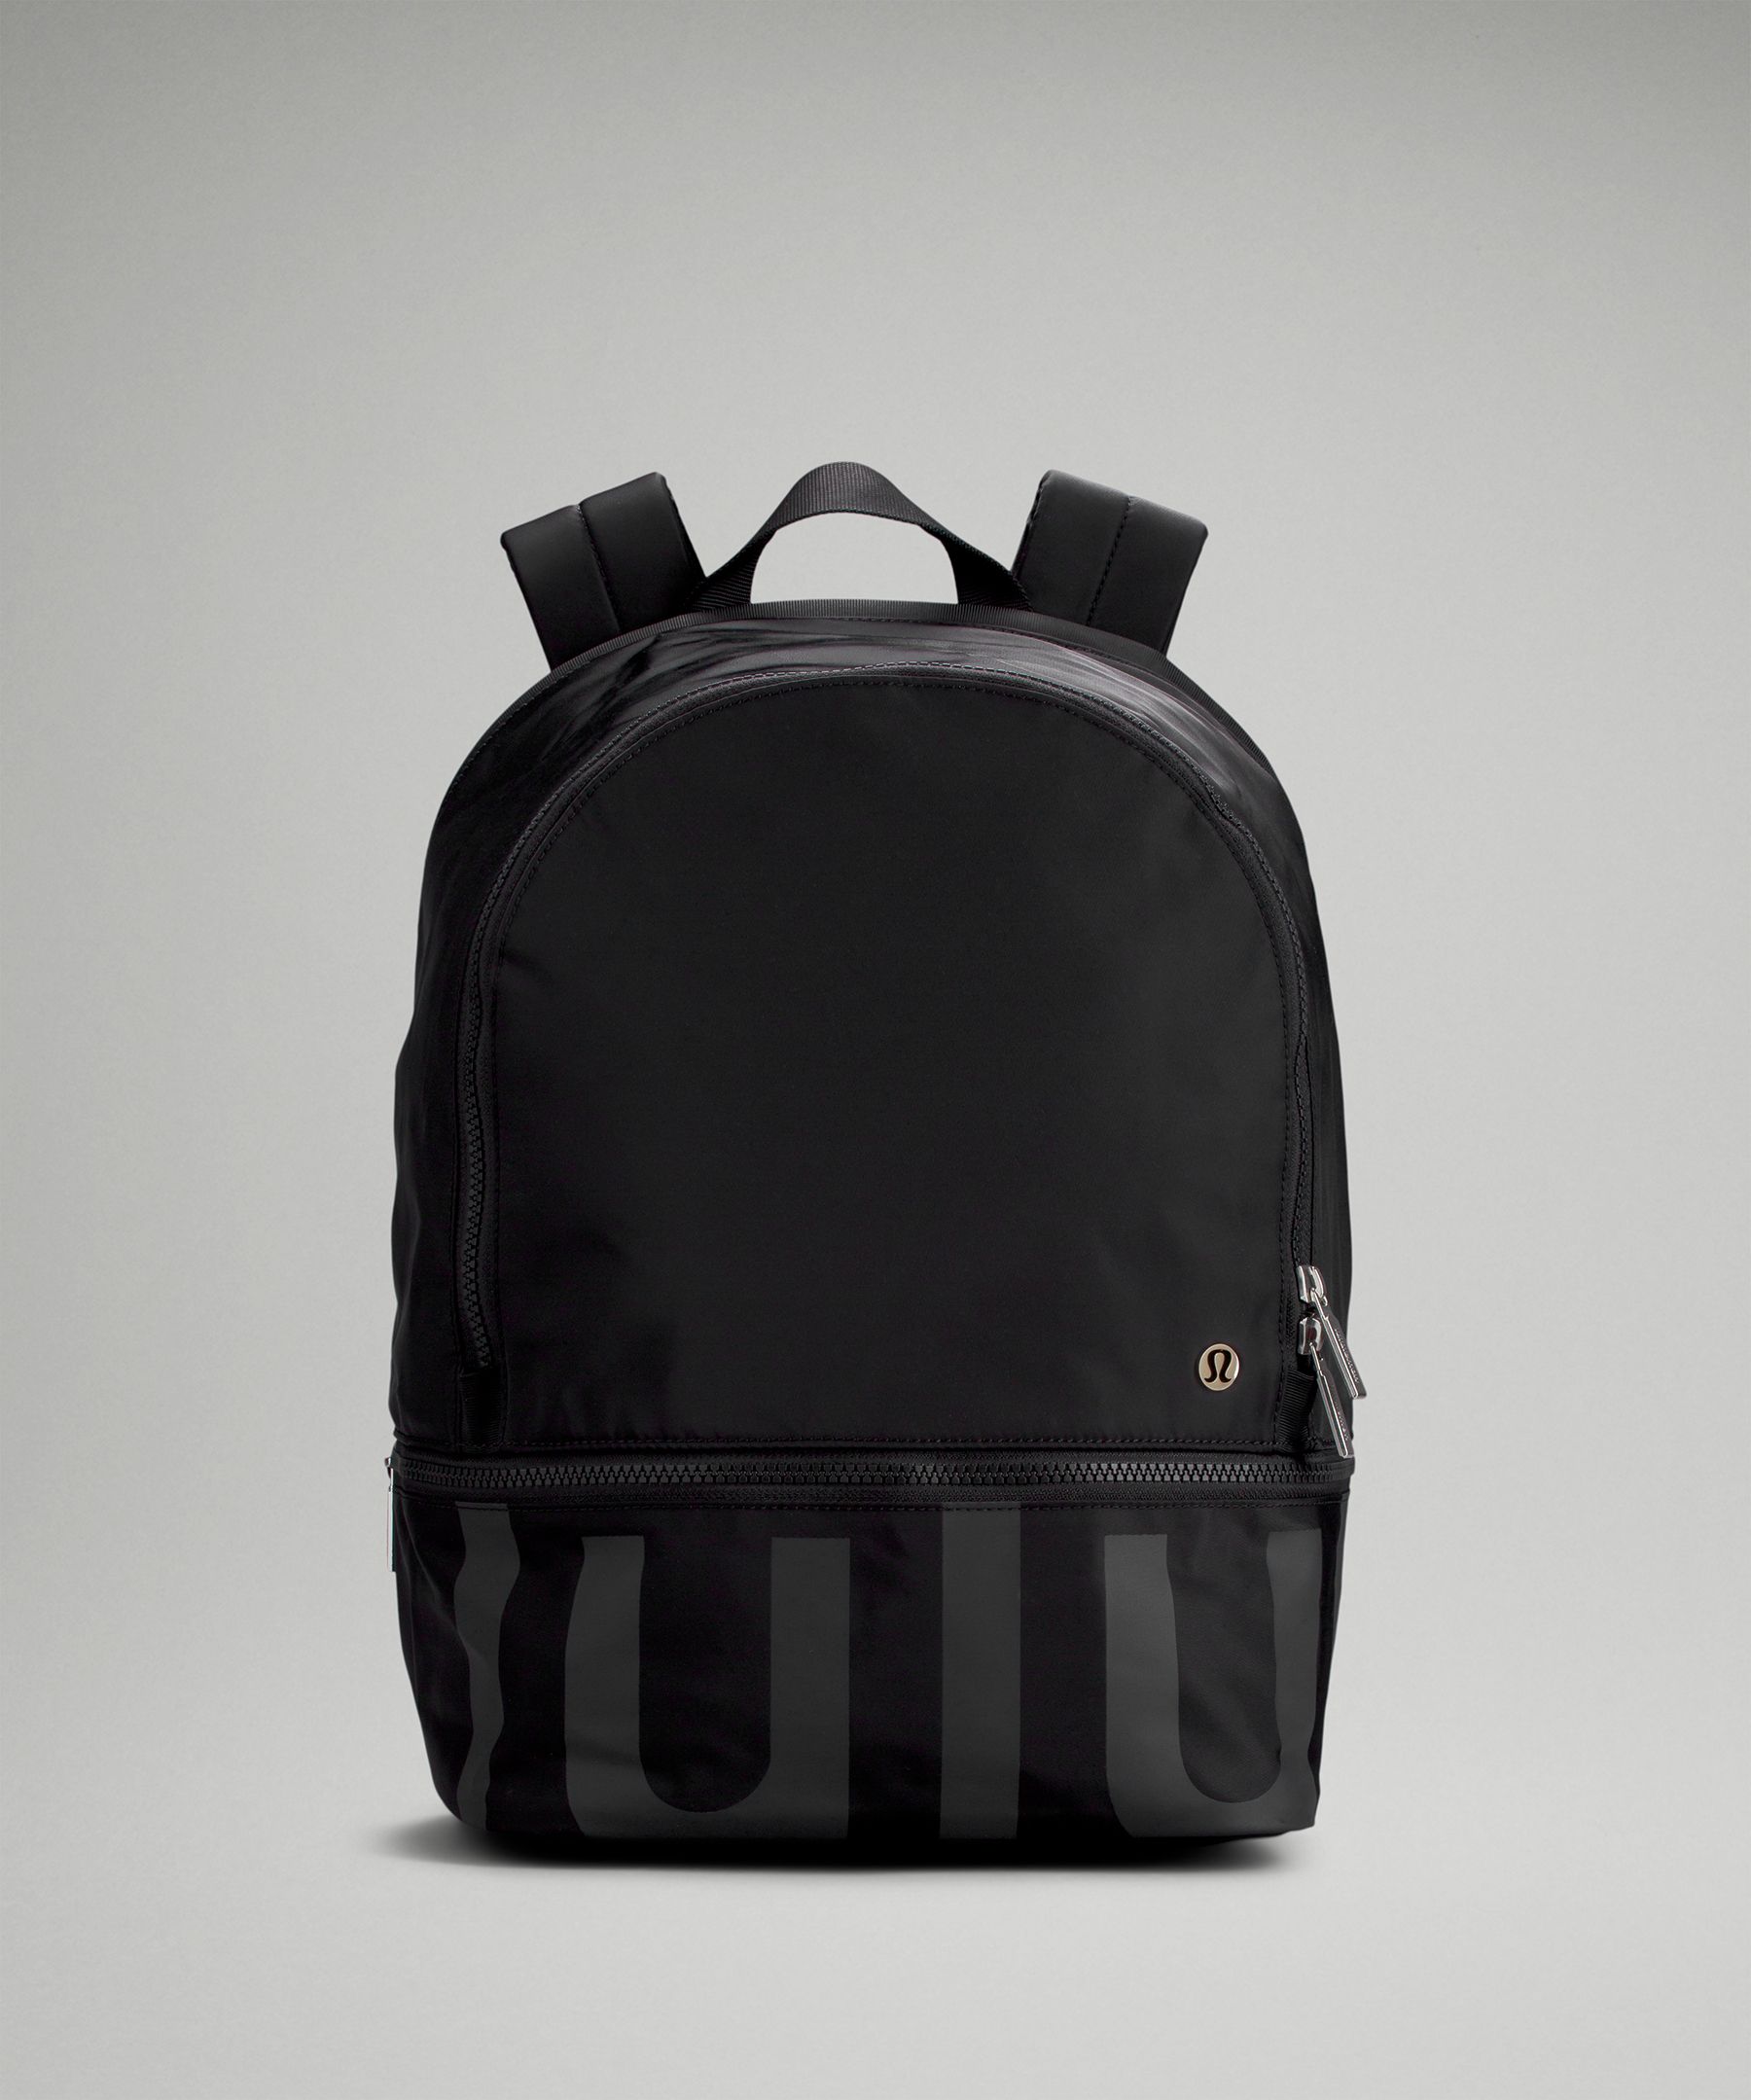 Lululemon City Adventurer Backpack 20l In Black/graphite Grey